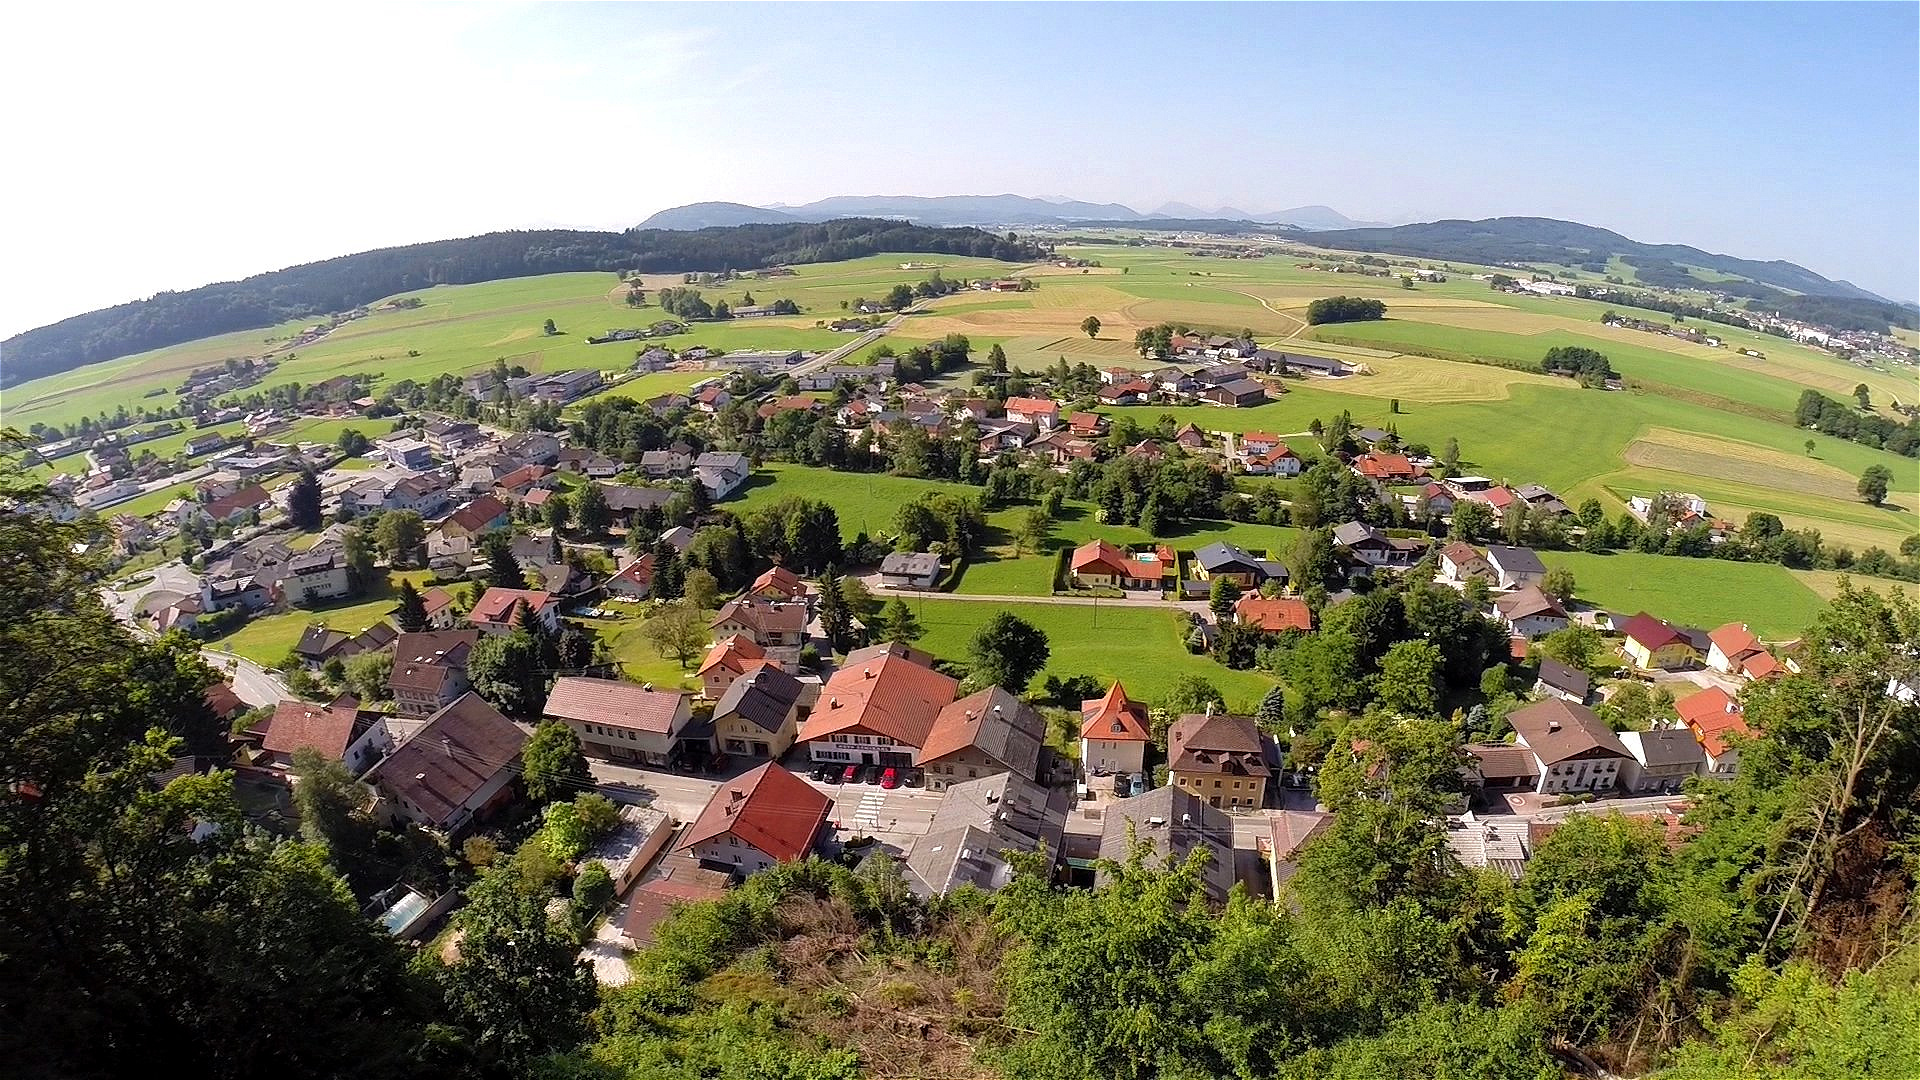 Tiefblick auf Friedburg vom Schlossberg aus - Juni 2014